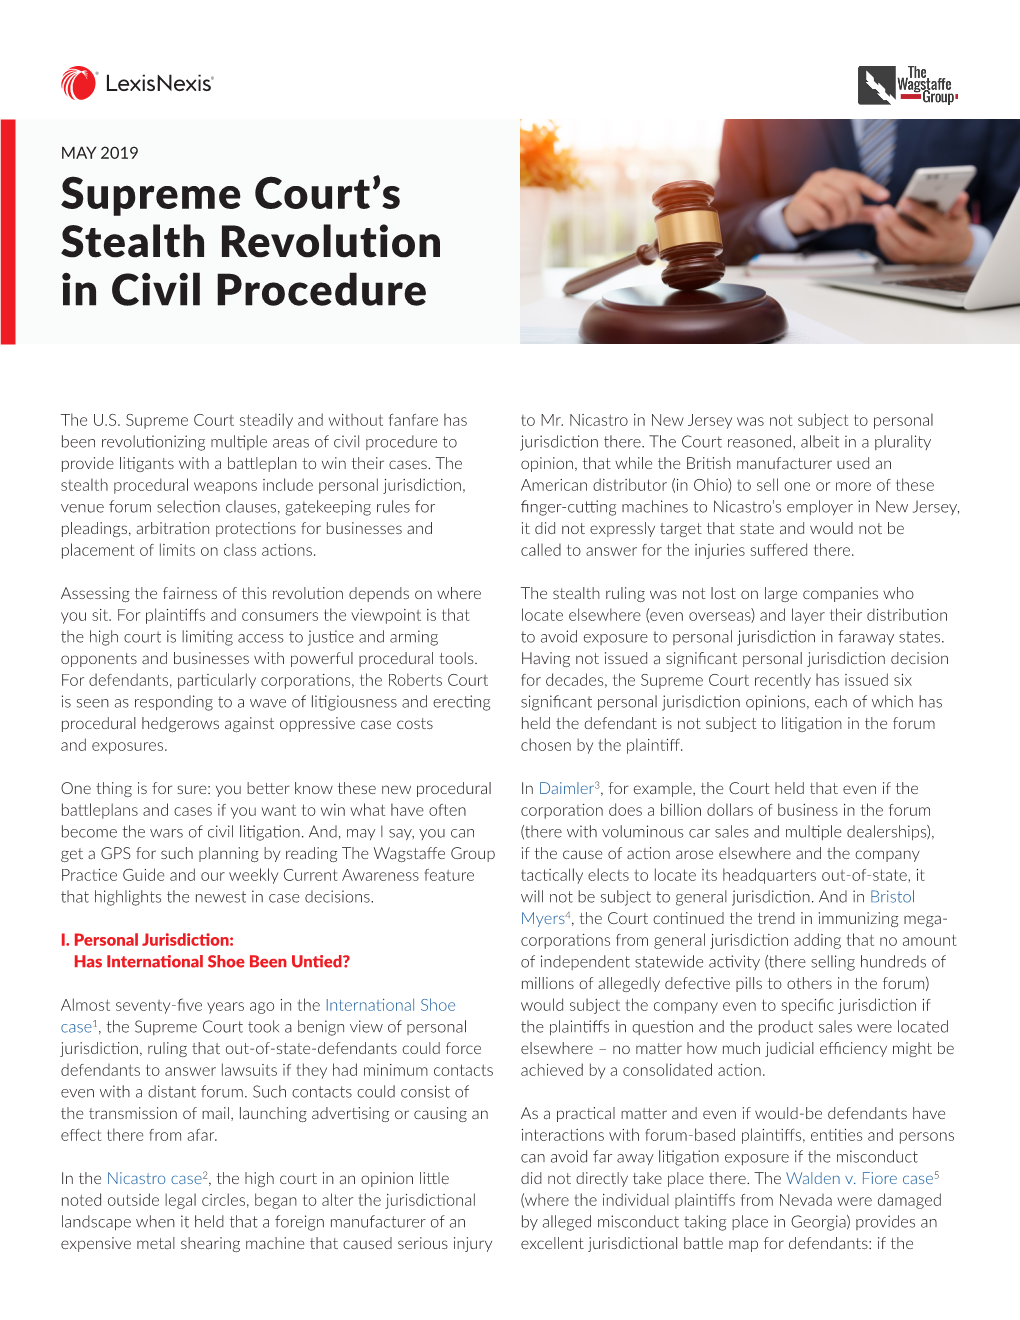 Supreme Court's Stealth Revolution in Civil Procedure